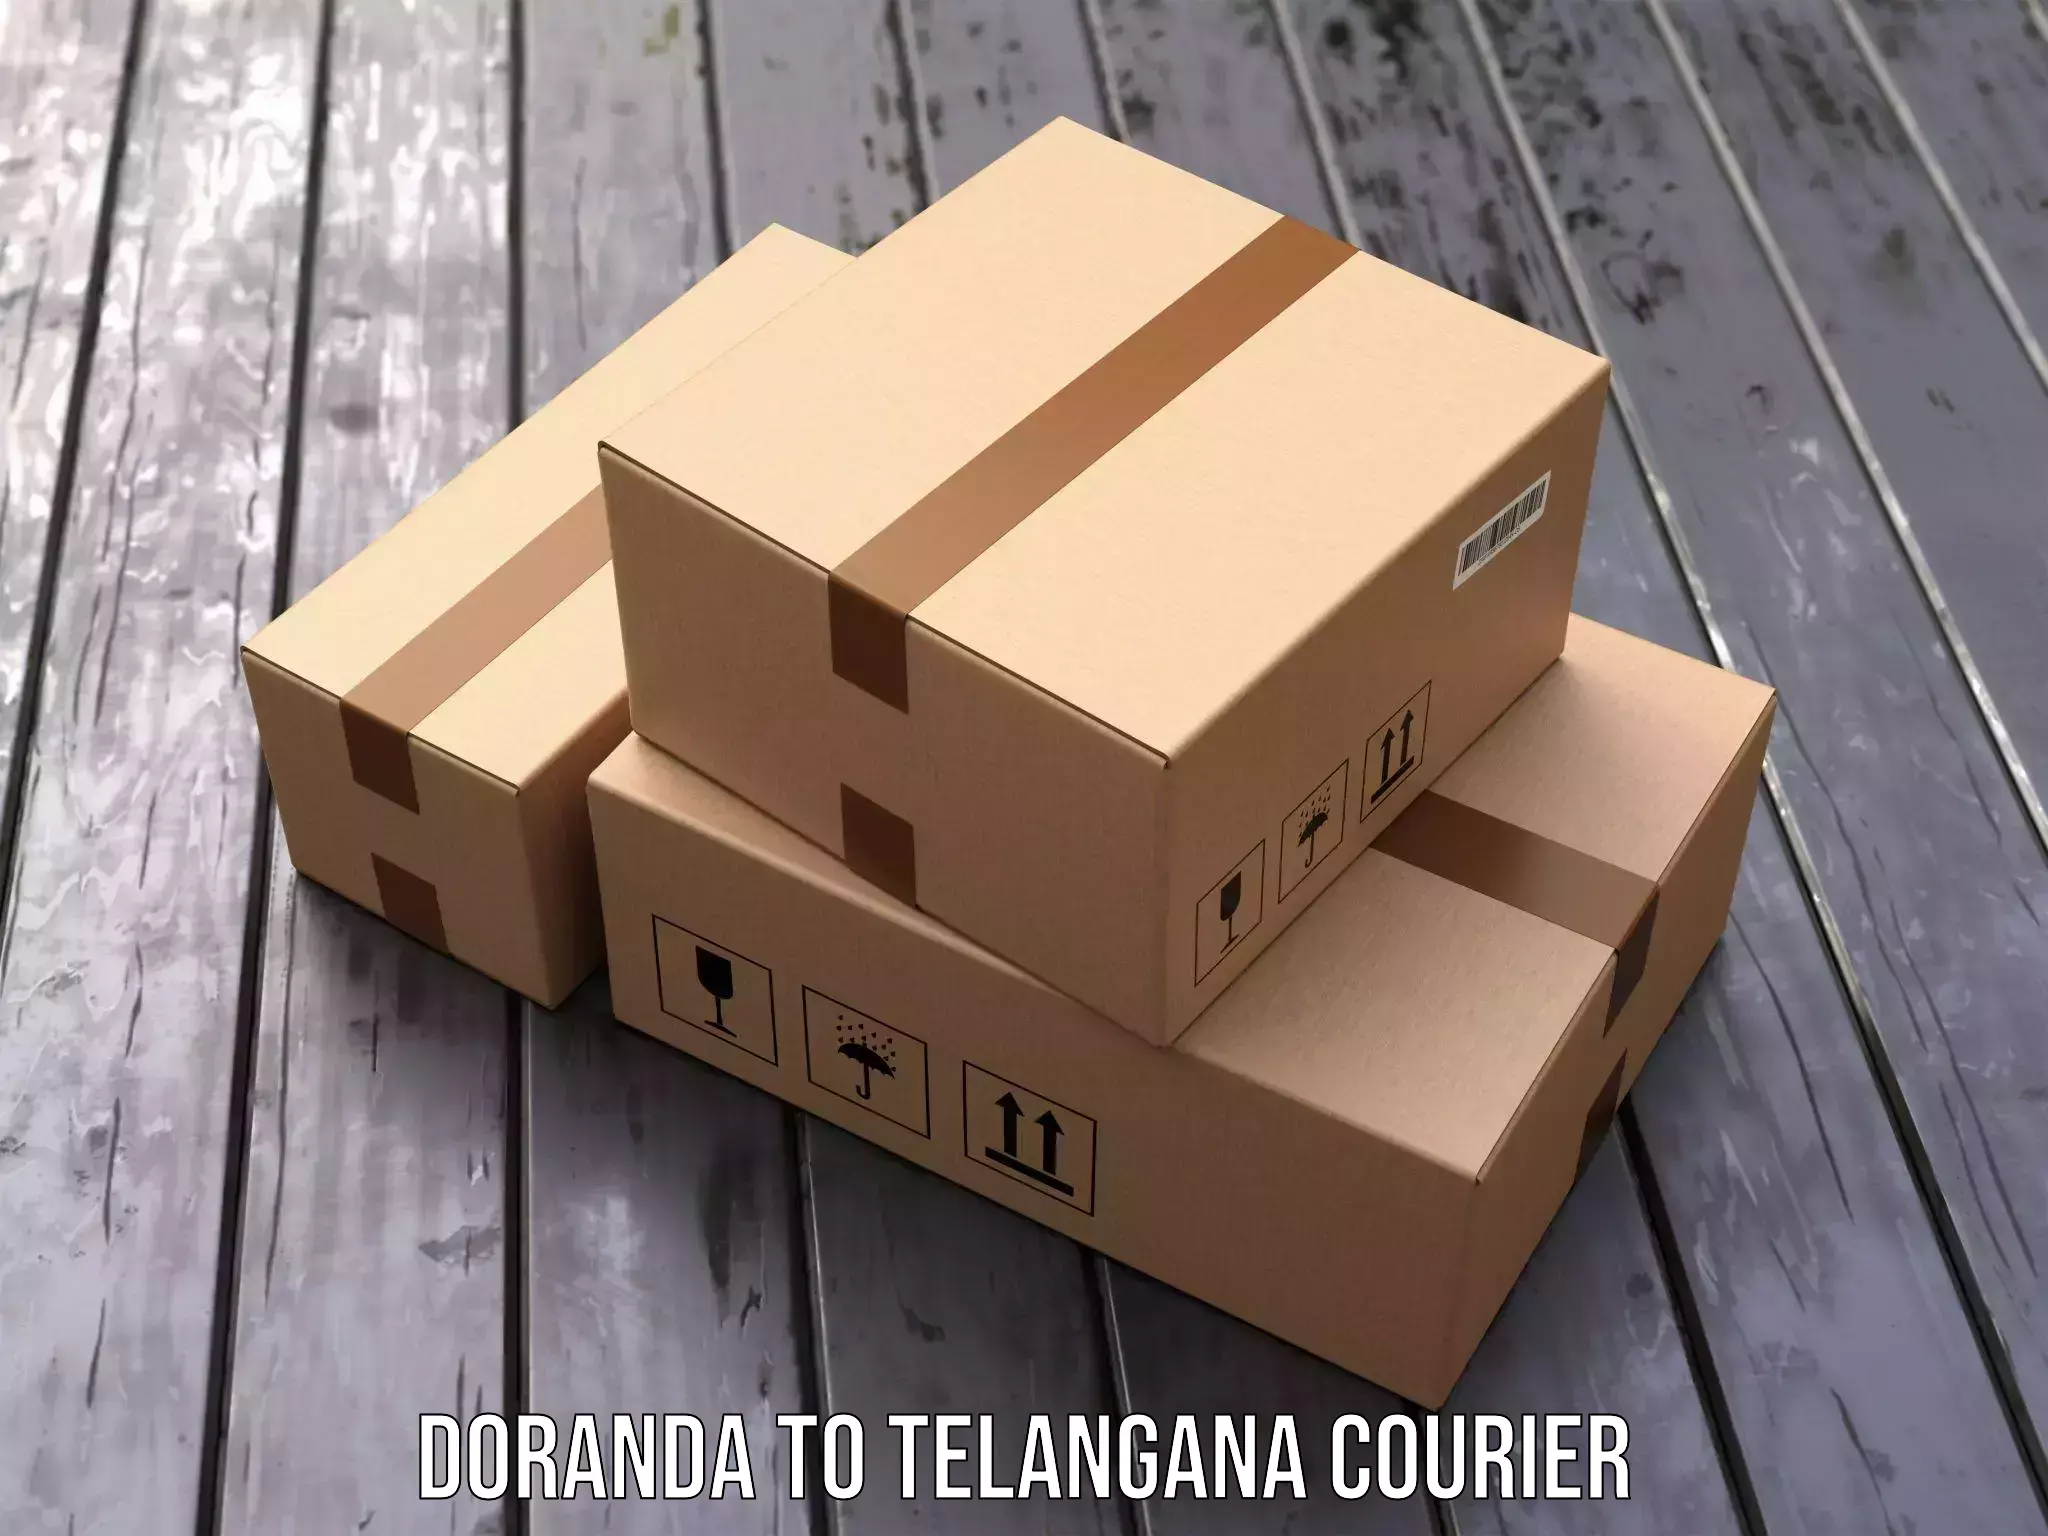 High-quality delivery services Doranda to Telangana